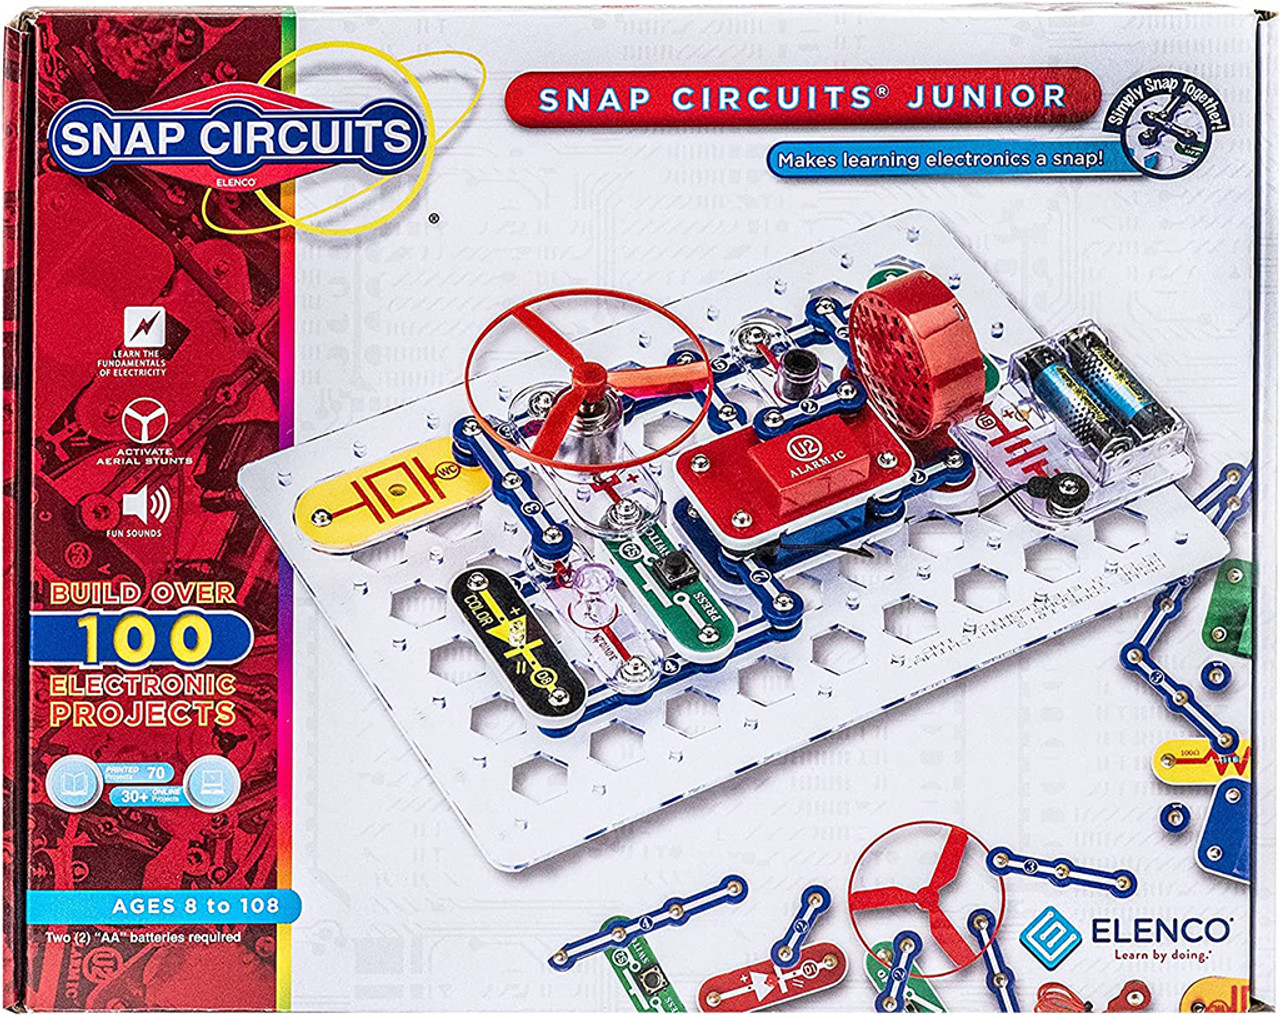 Elenco Snap Circuits 300 Experiments